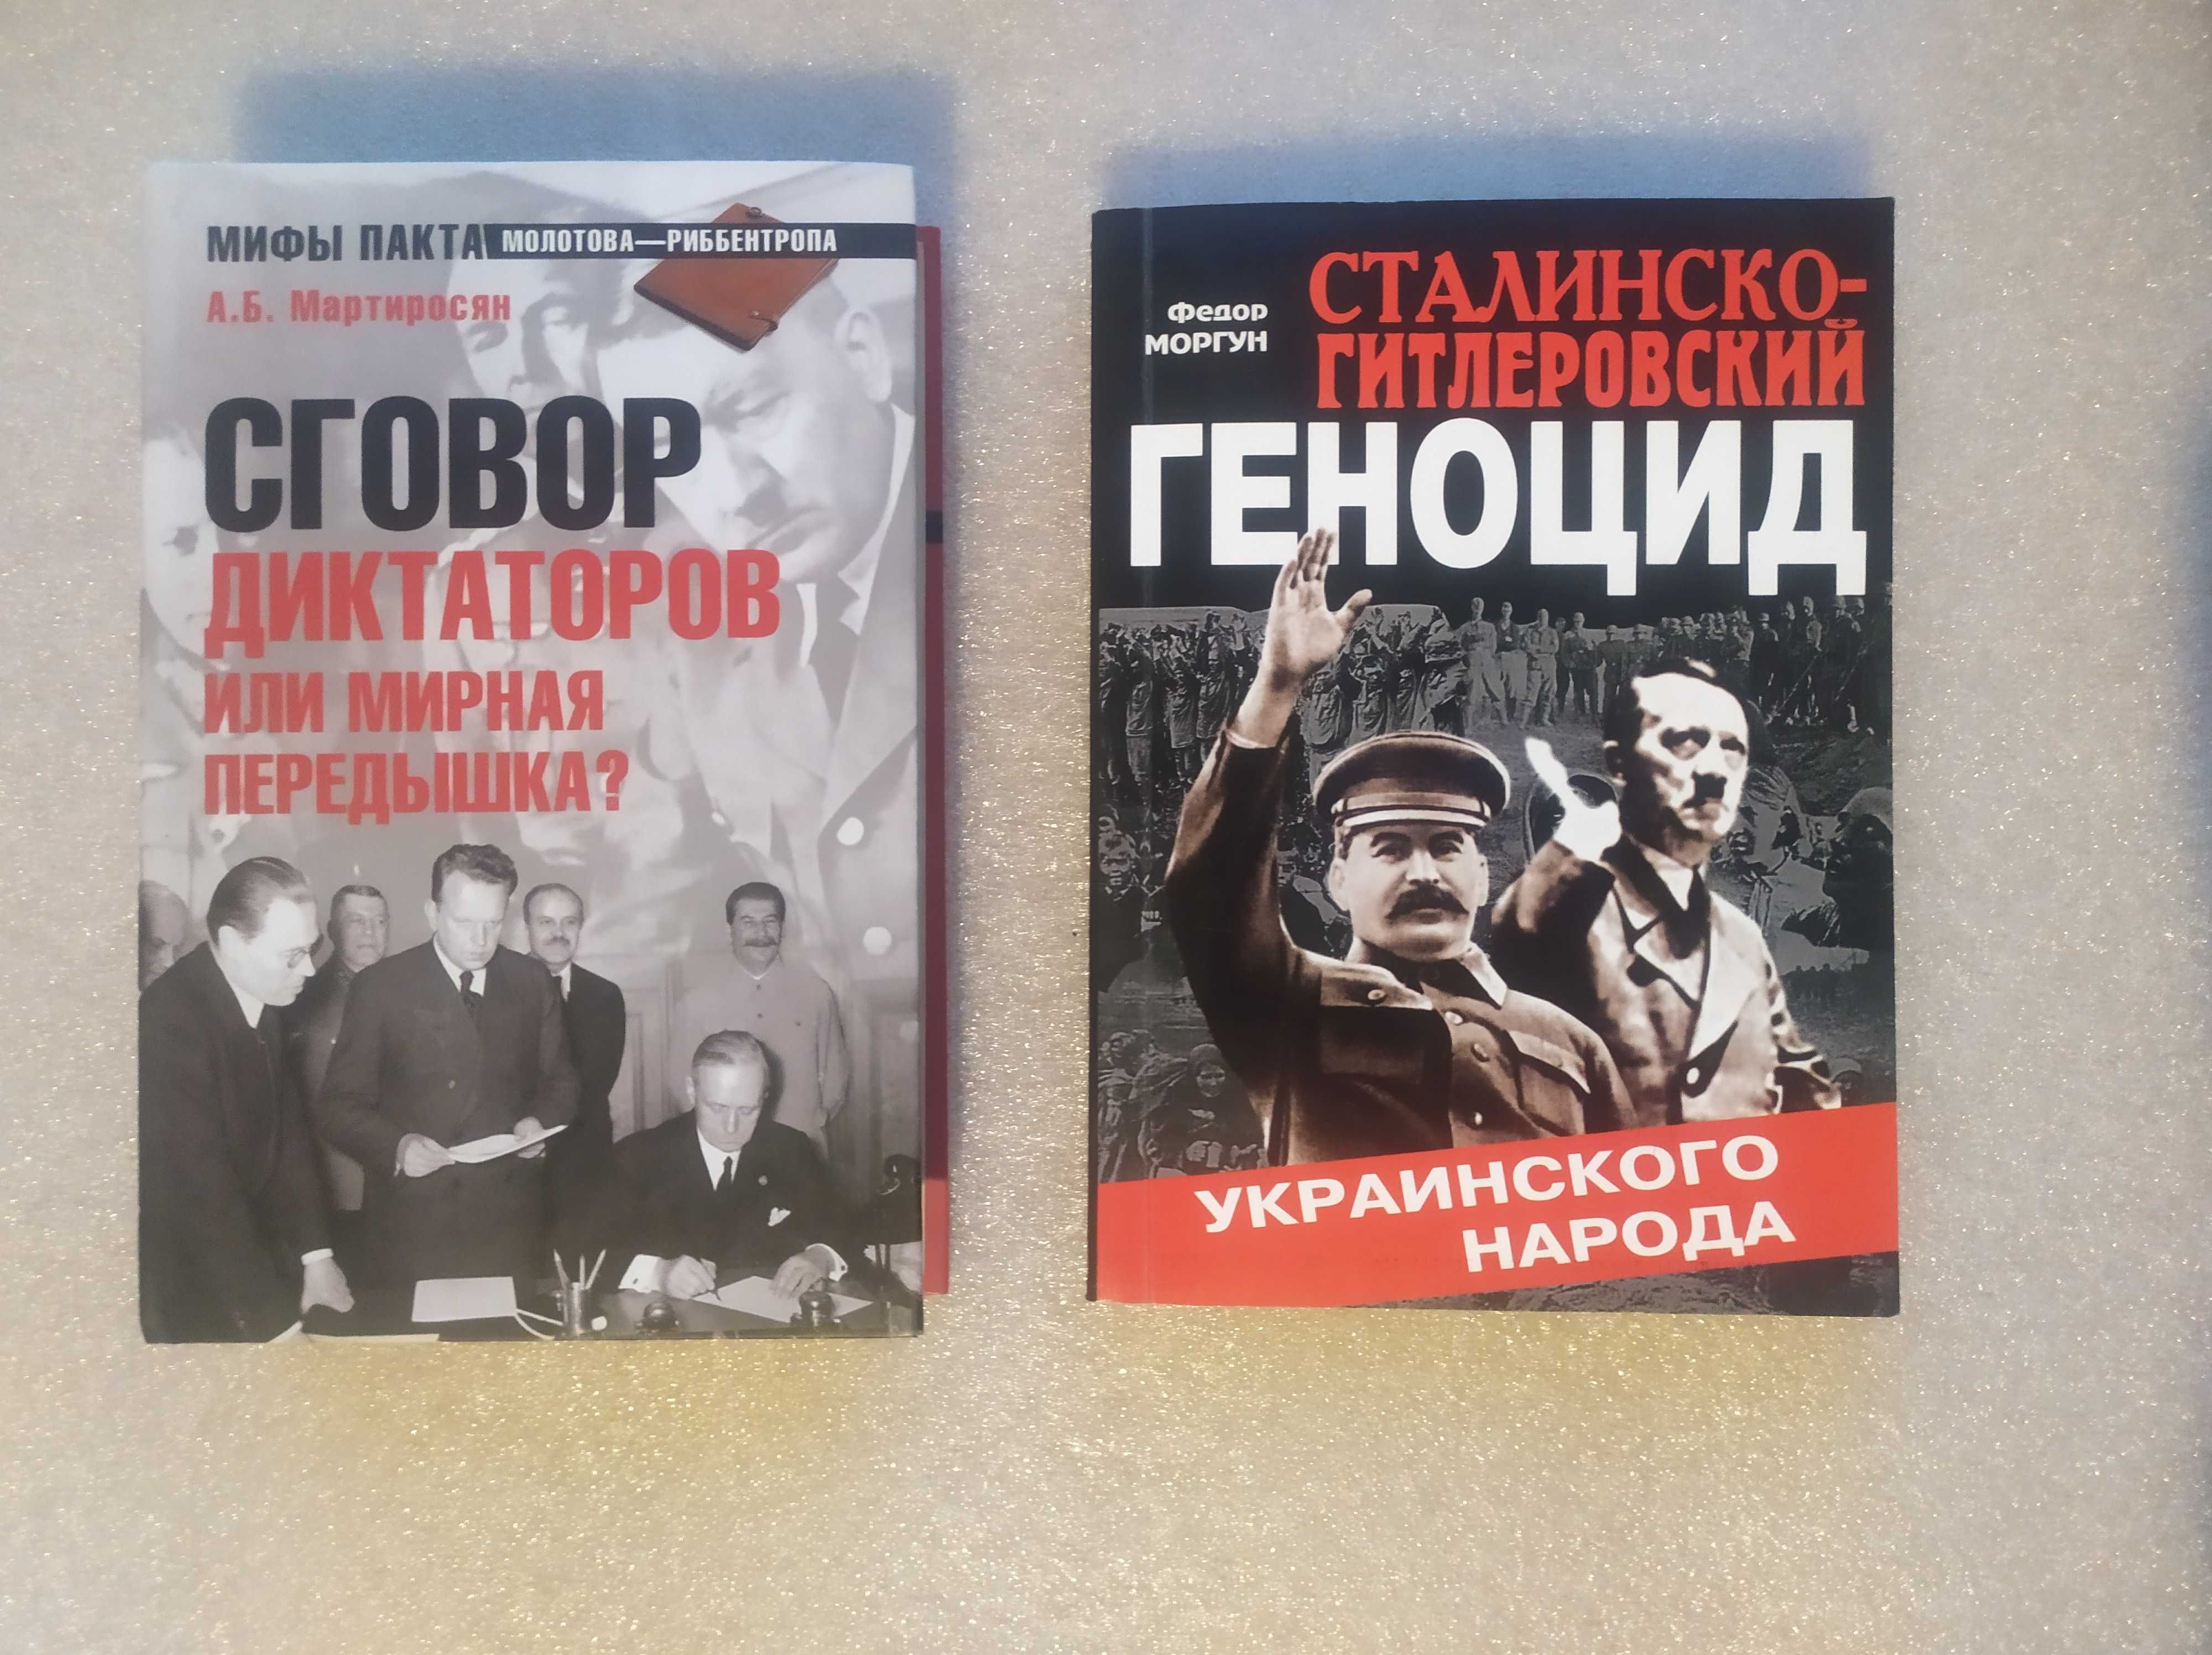 Книги на тему войны по 120 грн.